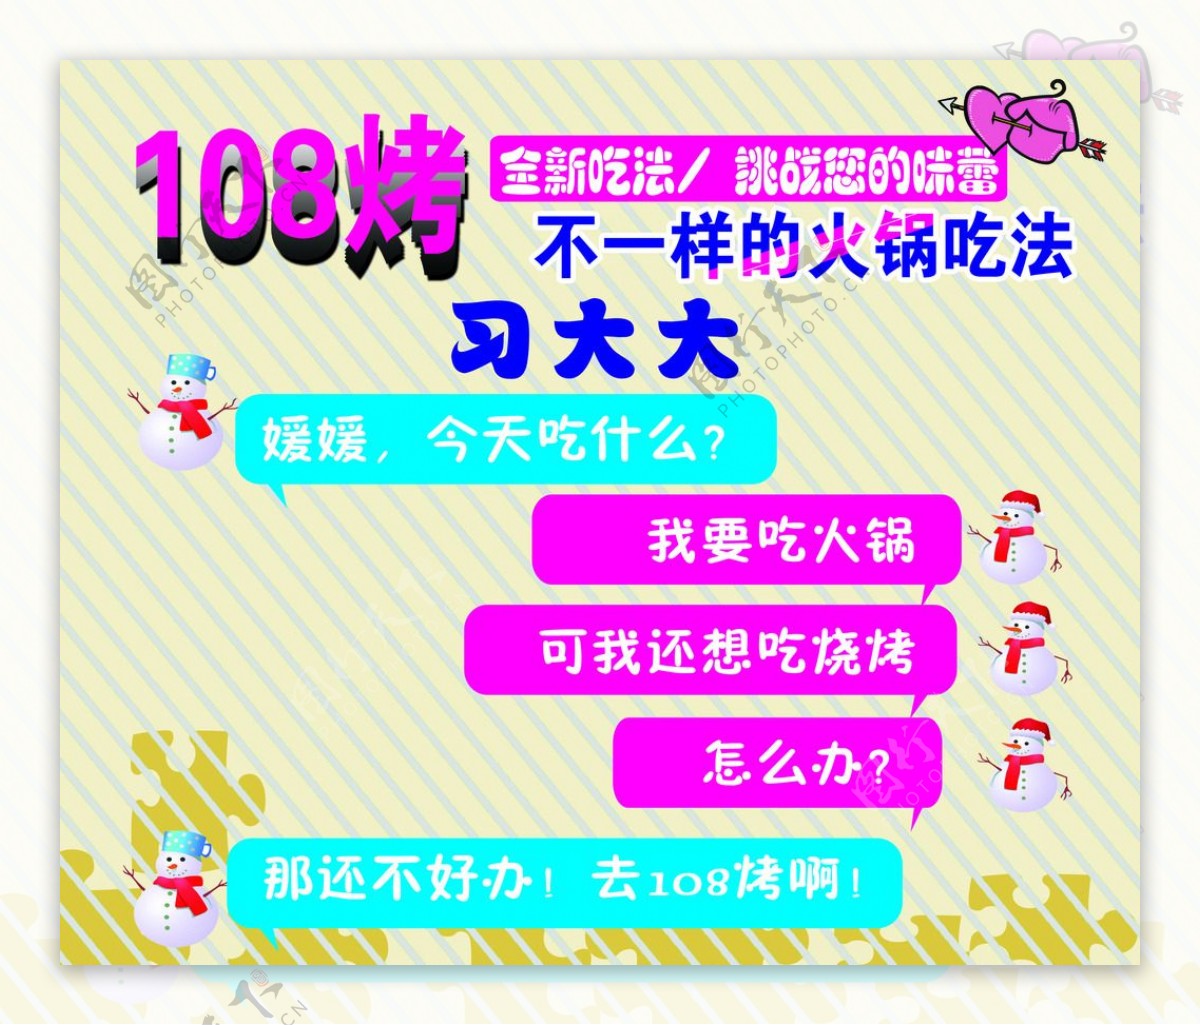 108烤火锅新吃法图片